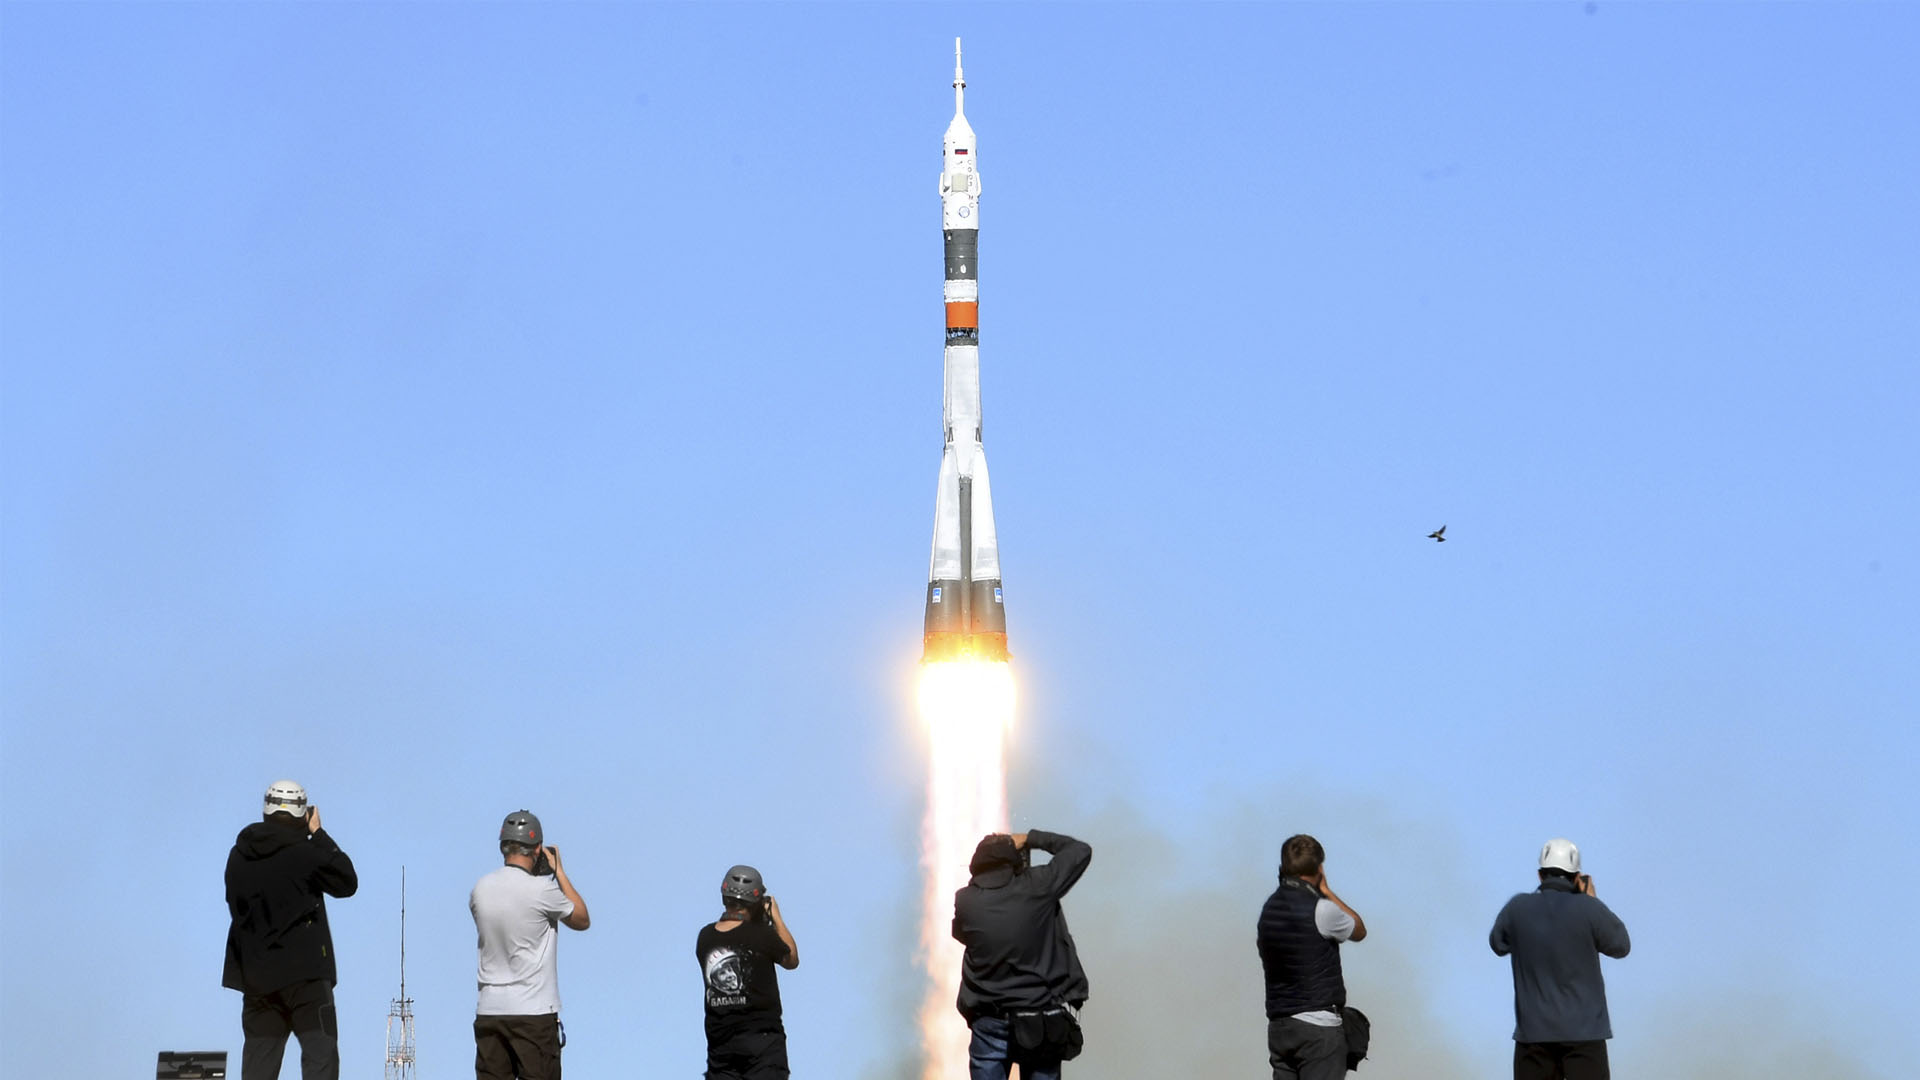 Un fallo en el motor obliga a la nave Soyuz a realizar un aterrizaje de emergencia